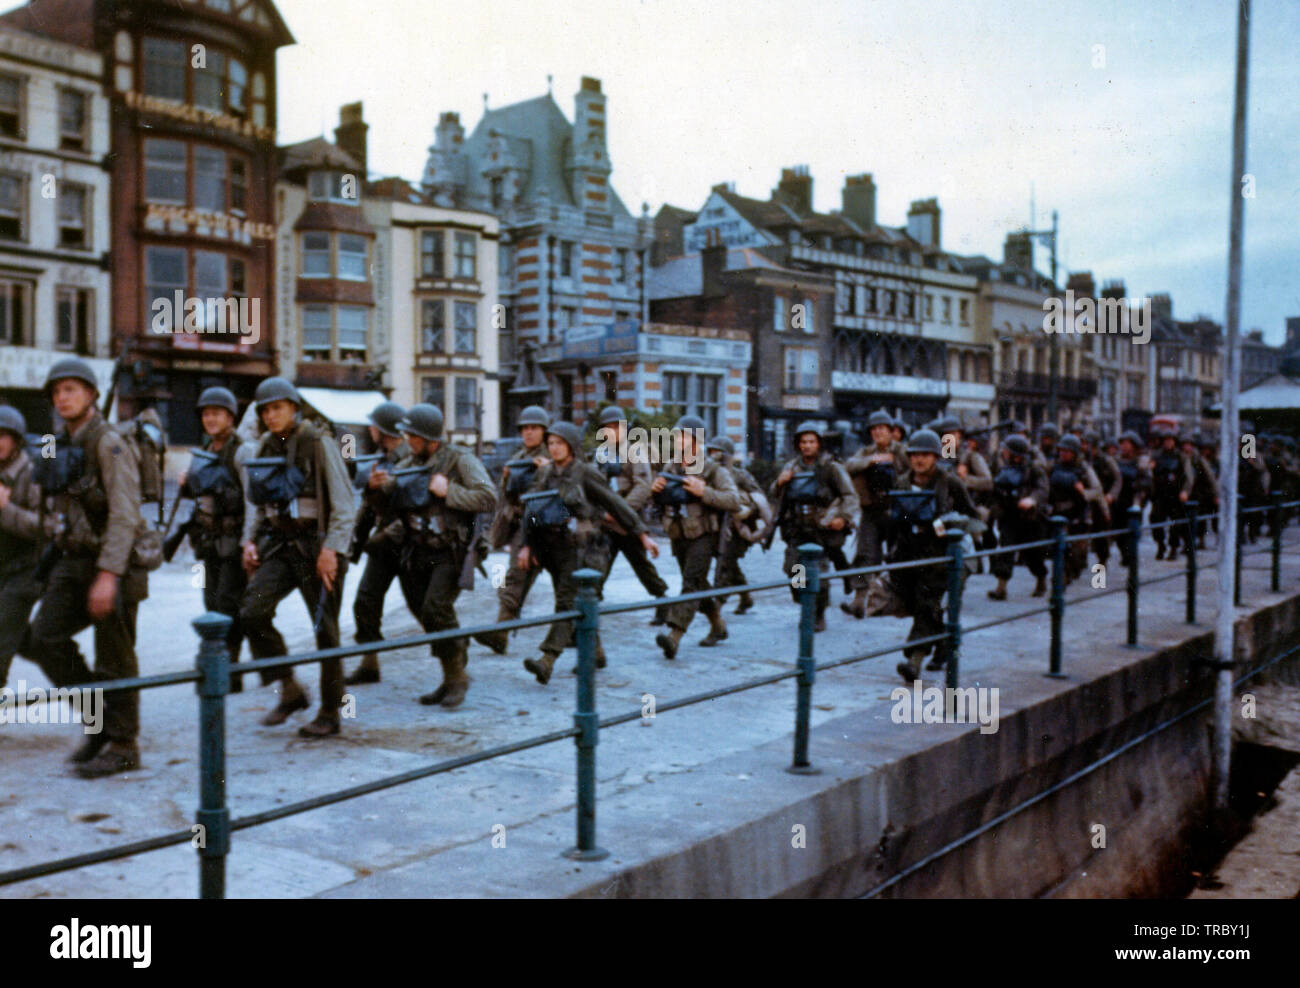 Ces troupes américaines marchons à travers les rues d'une ville portuaire britannique en route pour les docks où ils seront déposés dans des engins de débarquement pour le grand assaut. Juin, 1944 Banque D'Images